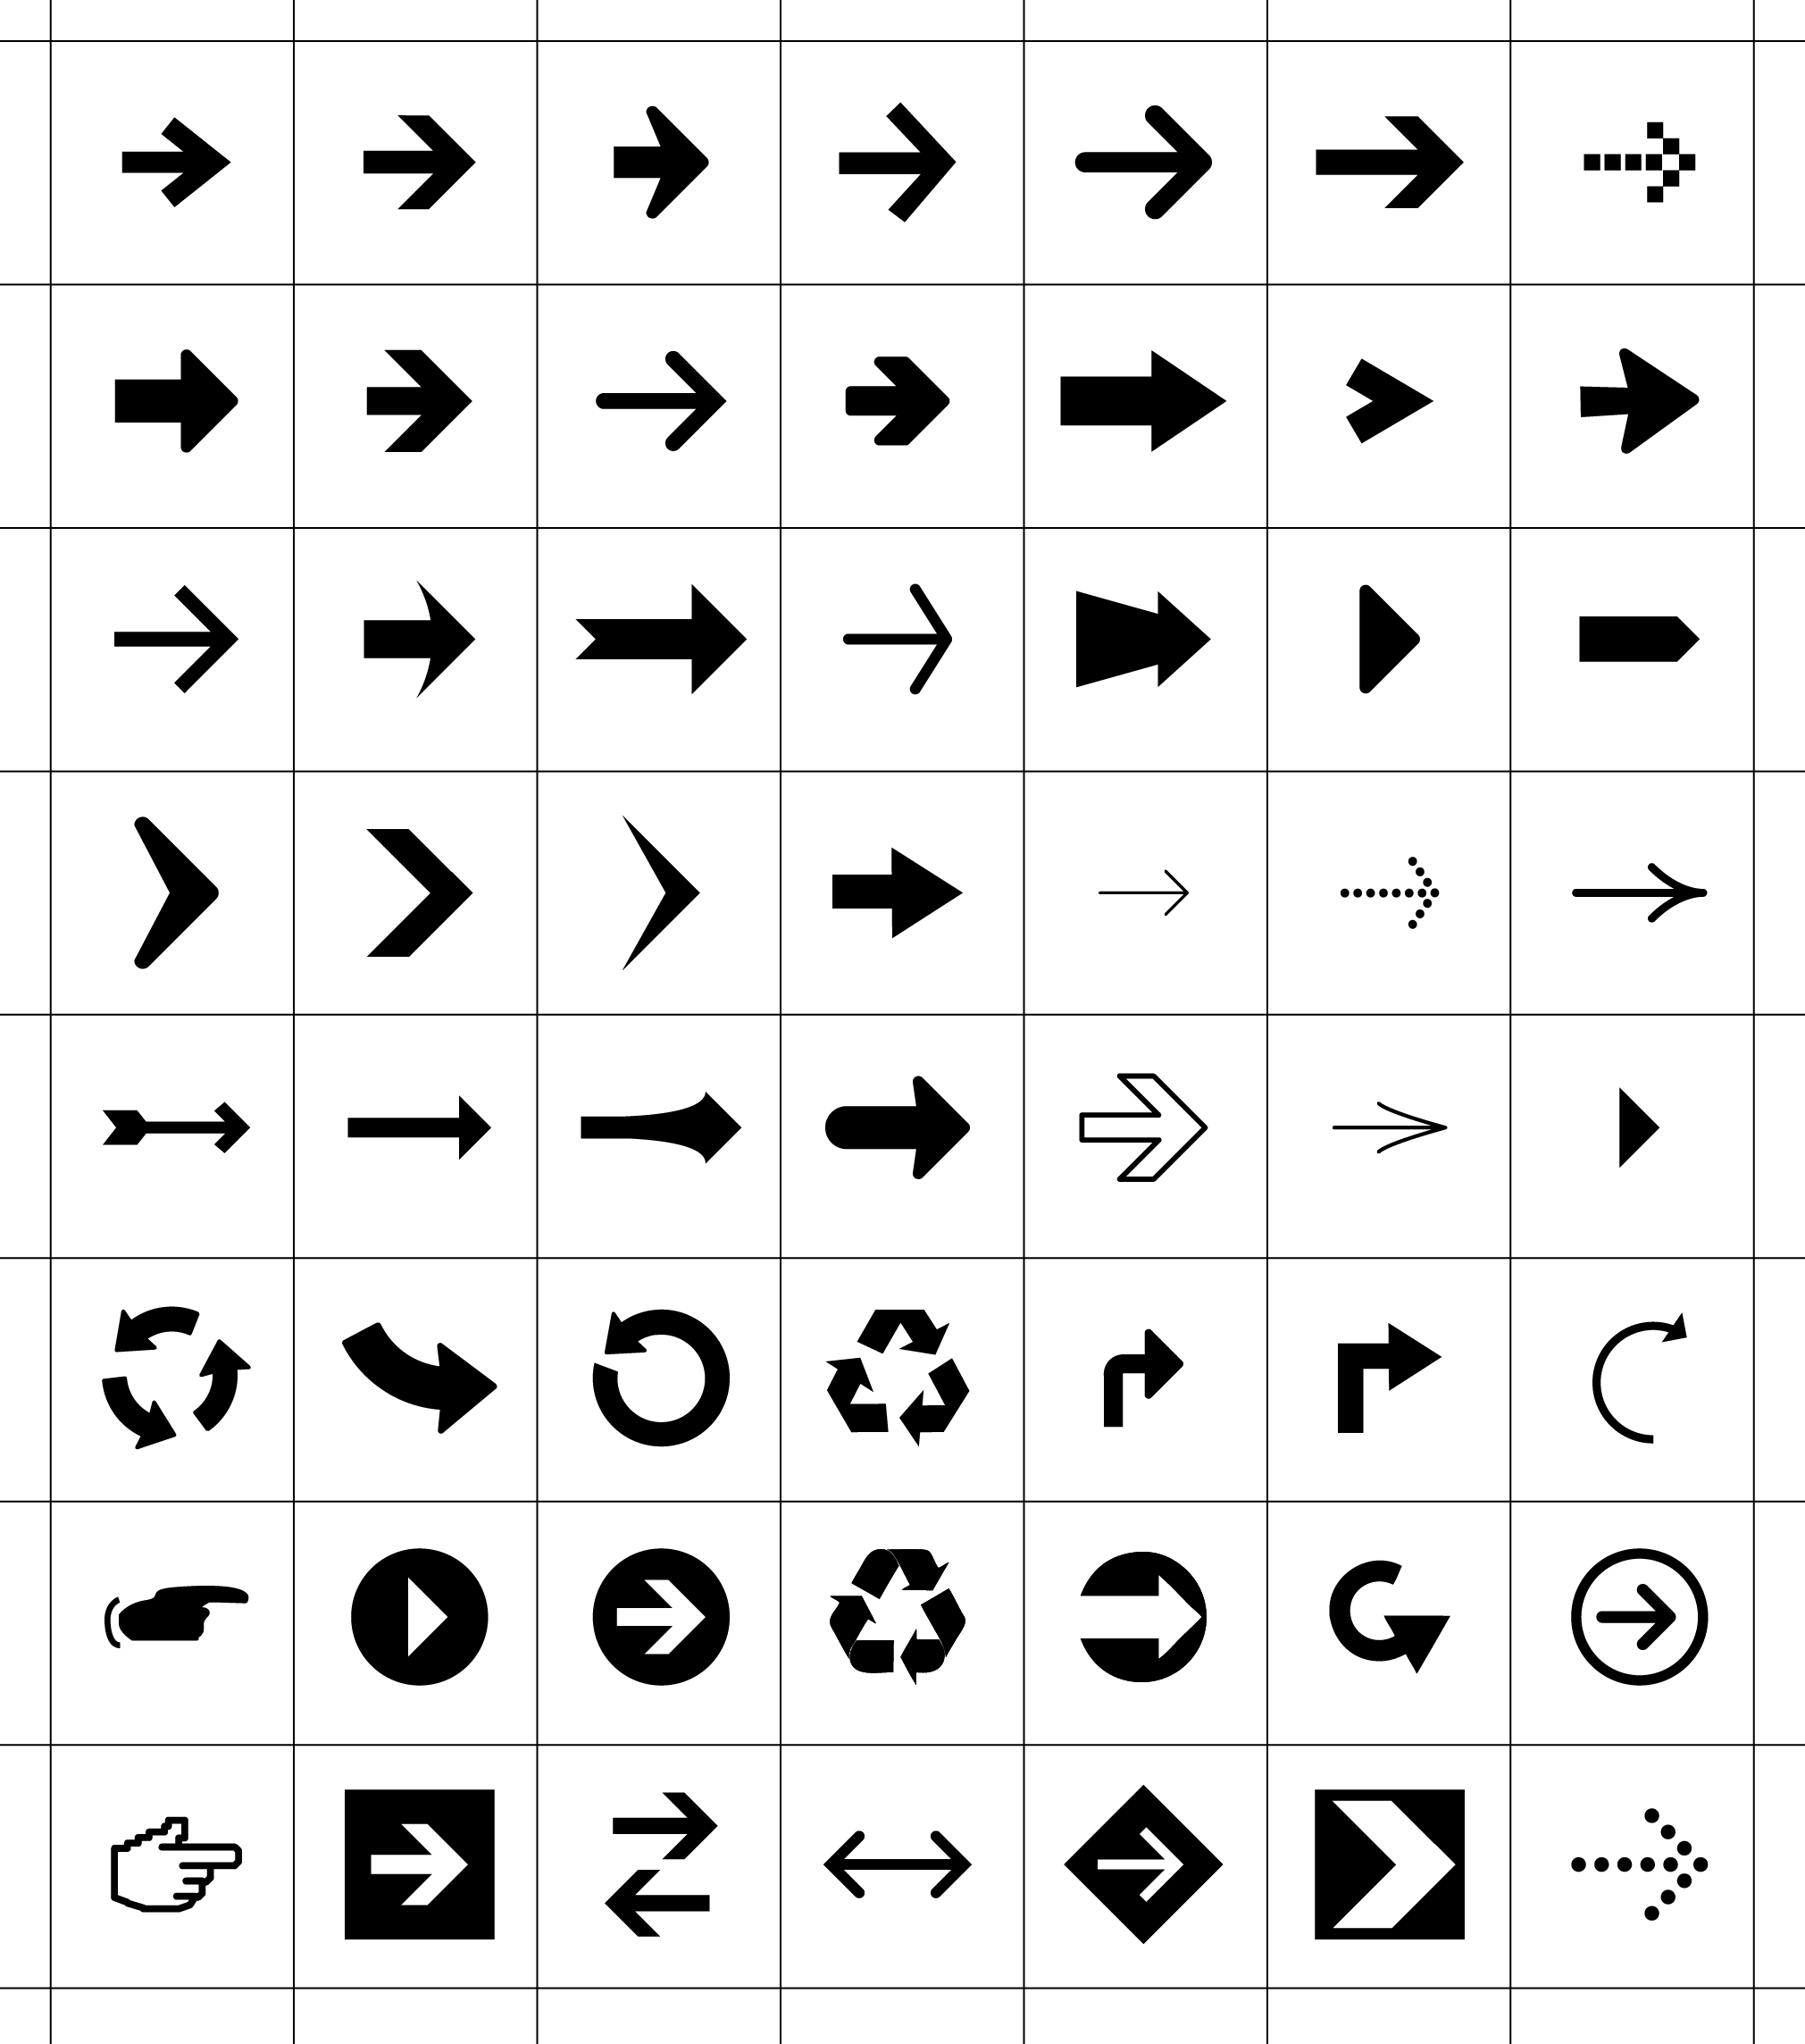 56 Free Arrow Symbols Icons